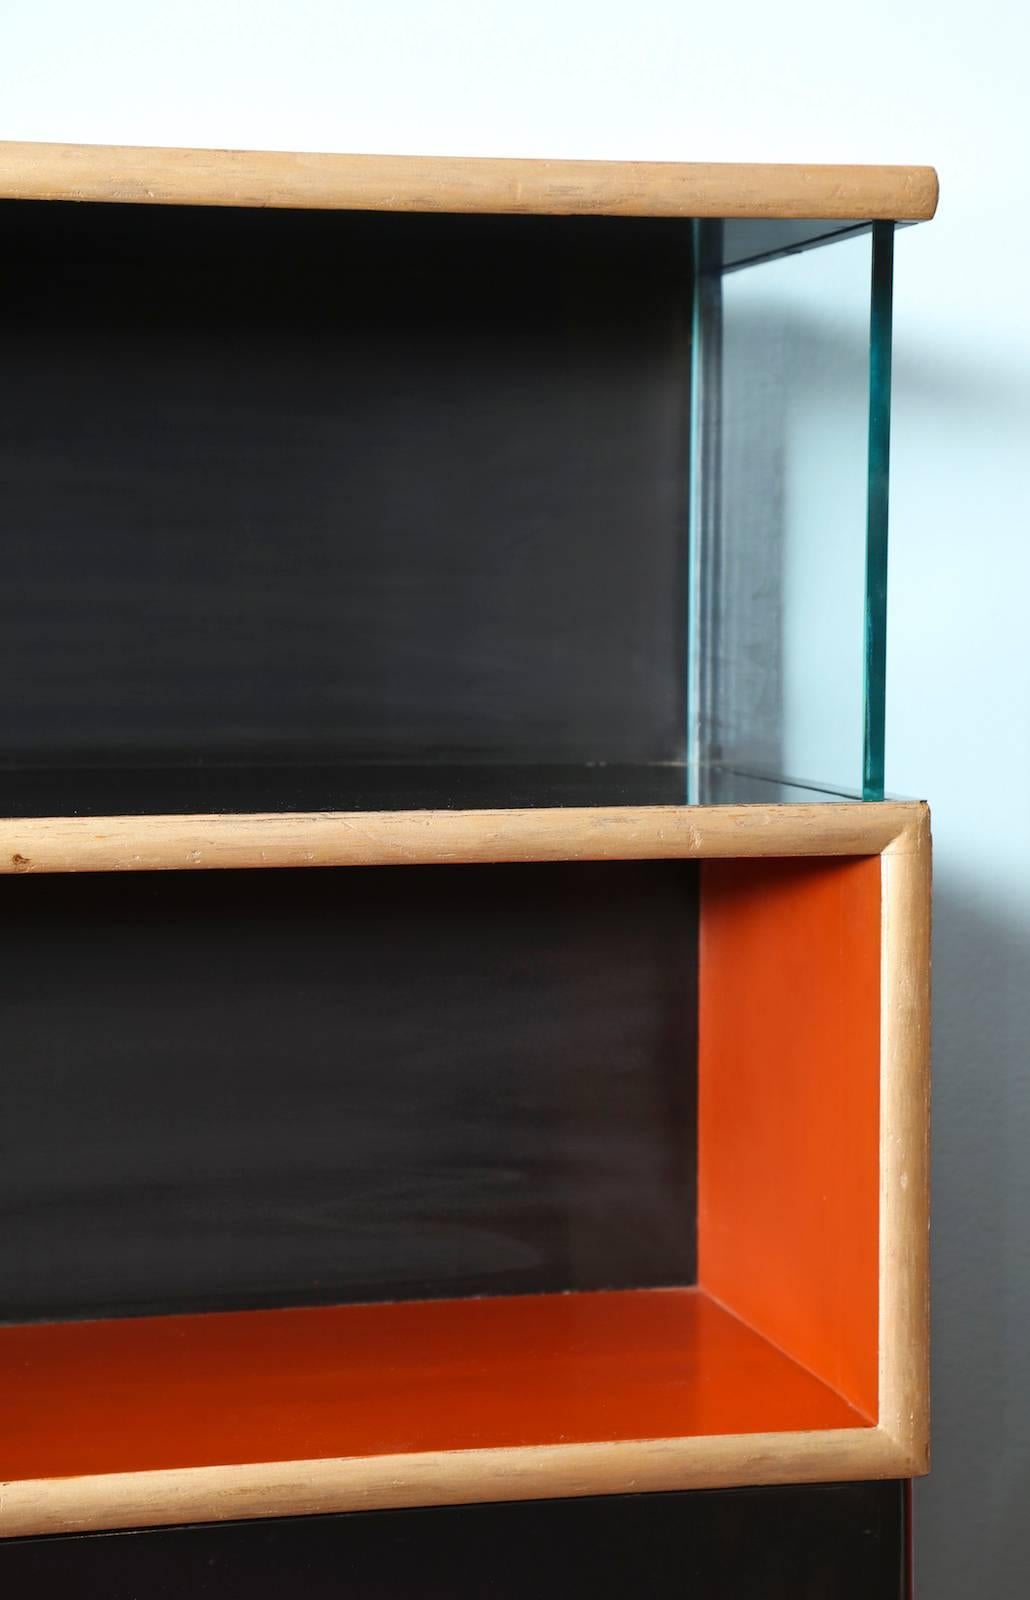 Seltener, von Paul Frankl entworfener Bücher- und Aufbewahrungsschrank. Orange und schwarz lackiertes Holz, mit goldfarbener Oberfläche in einem sich schlängelnden geometrischen Motiv und dicken Glas-Seitenteilen. Ein seltenes Beispiel für